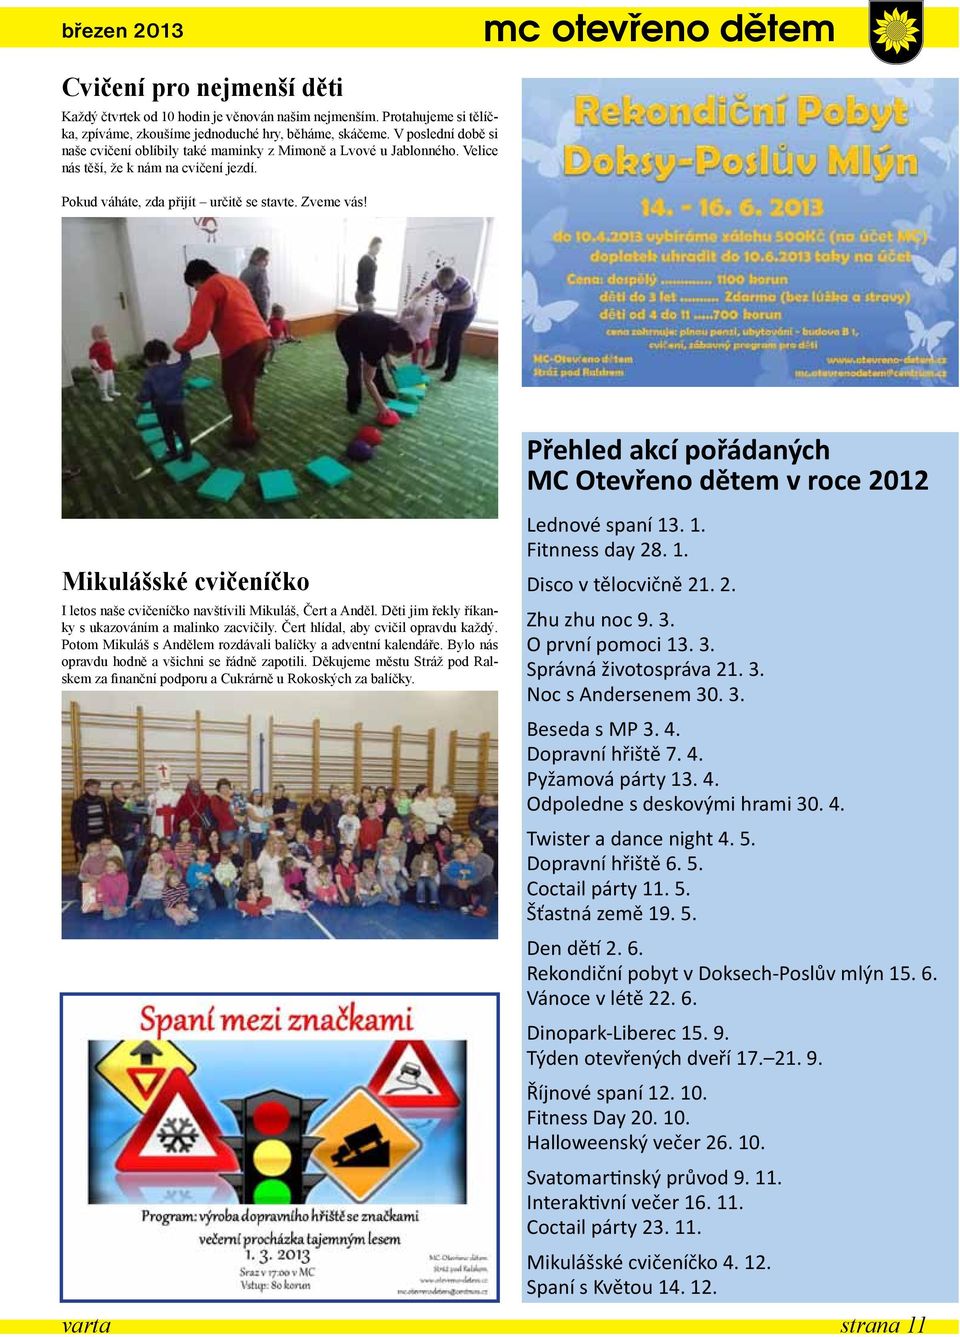 Přehled akcí pořádaných MC Otevřeno dětem v roce 2012 Mikulášské cvičeníčko I letos naše cvičeníčko navštívili Mikuláš, Čert a Anděl. Děti jim řekly říkanky s ukazováním a malinko zacvičily.